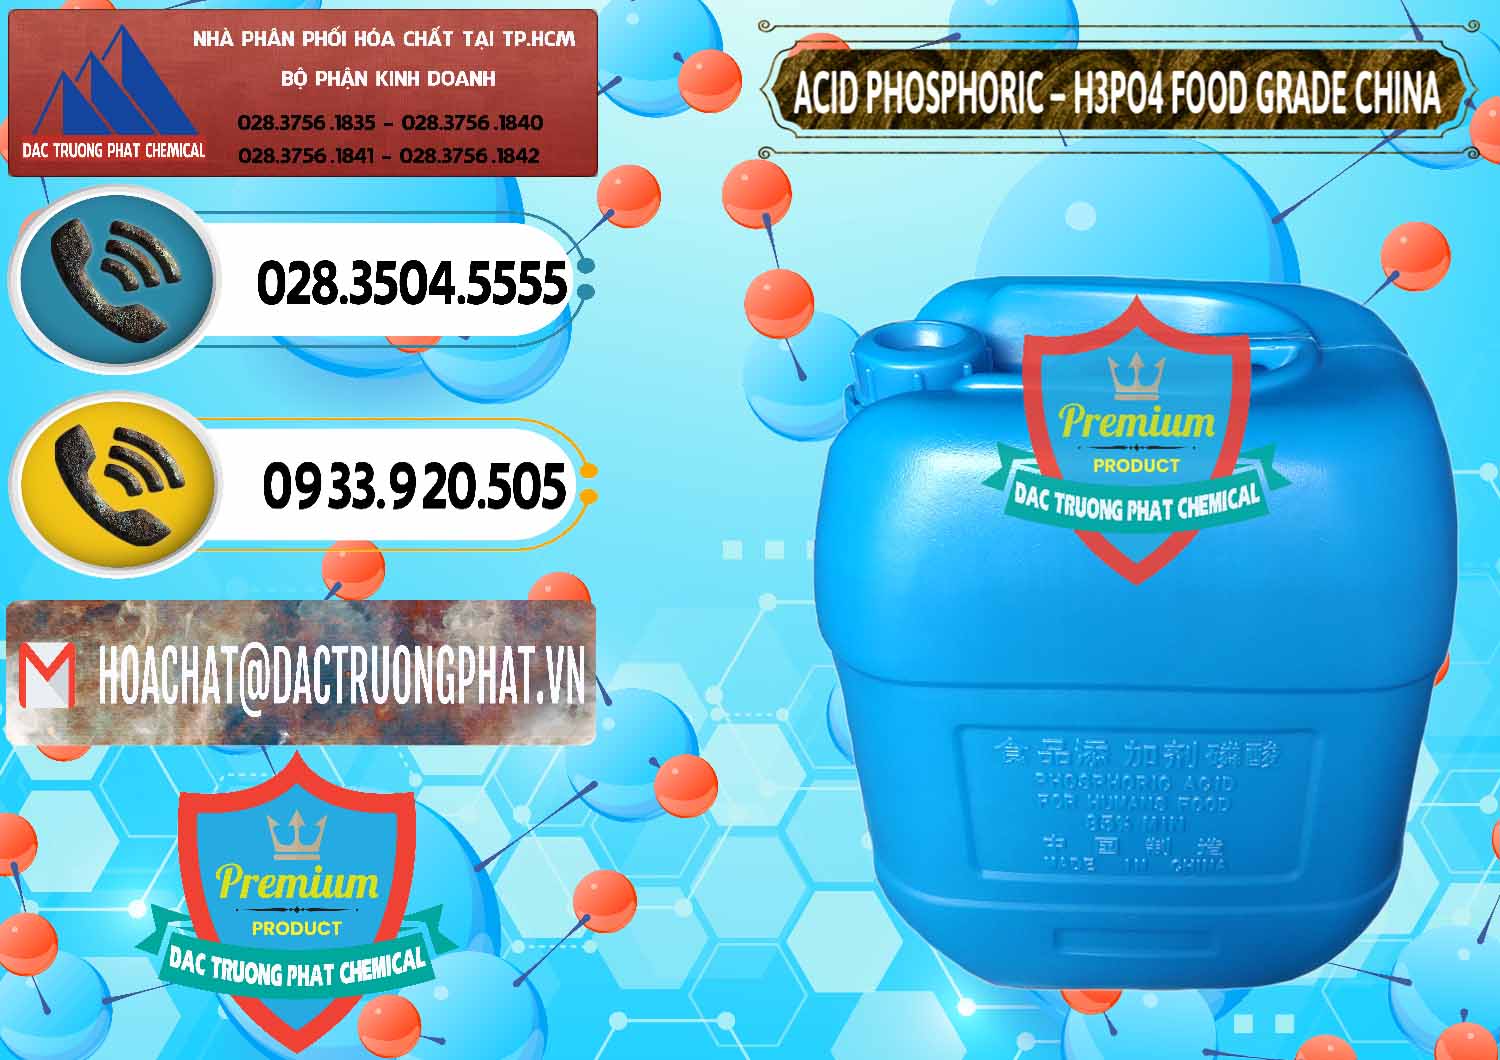 Cty bán - cung cấp Acid Phosphoric – H3PO4 85% Food Grade Trung Quốc China - 0015 - Công ty phân phối _ nhập khẩu hóa chất tại TP.HCM - hoachatdetnhuom.vn